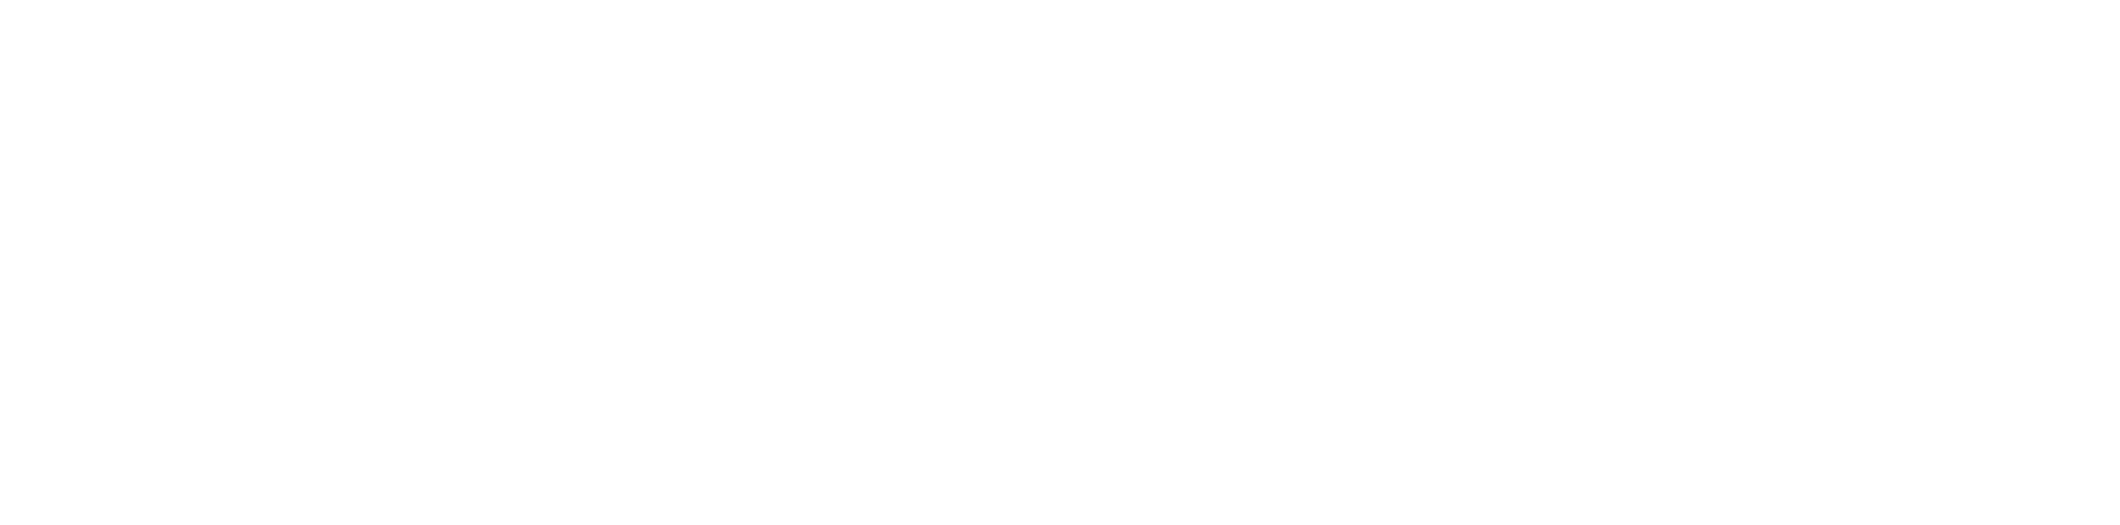 nxcode_logo_text_white